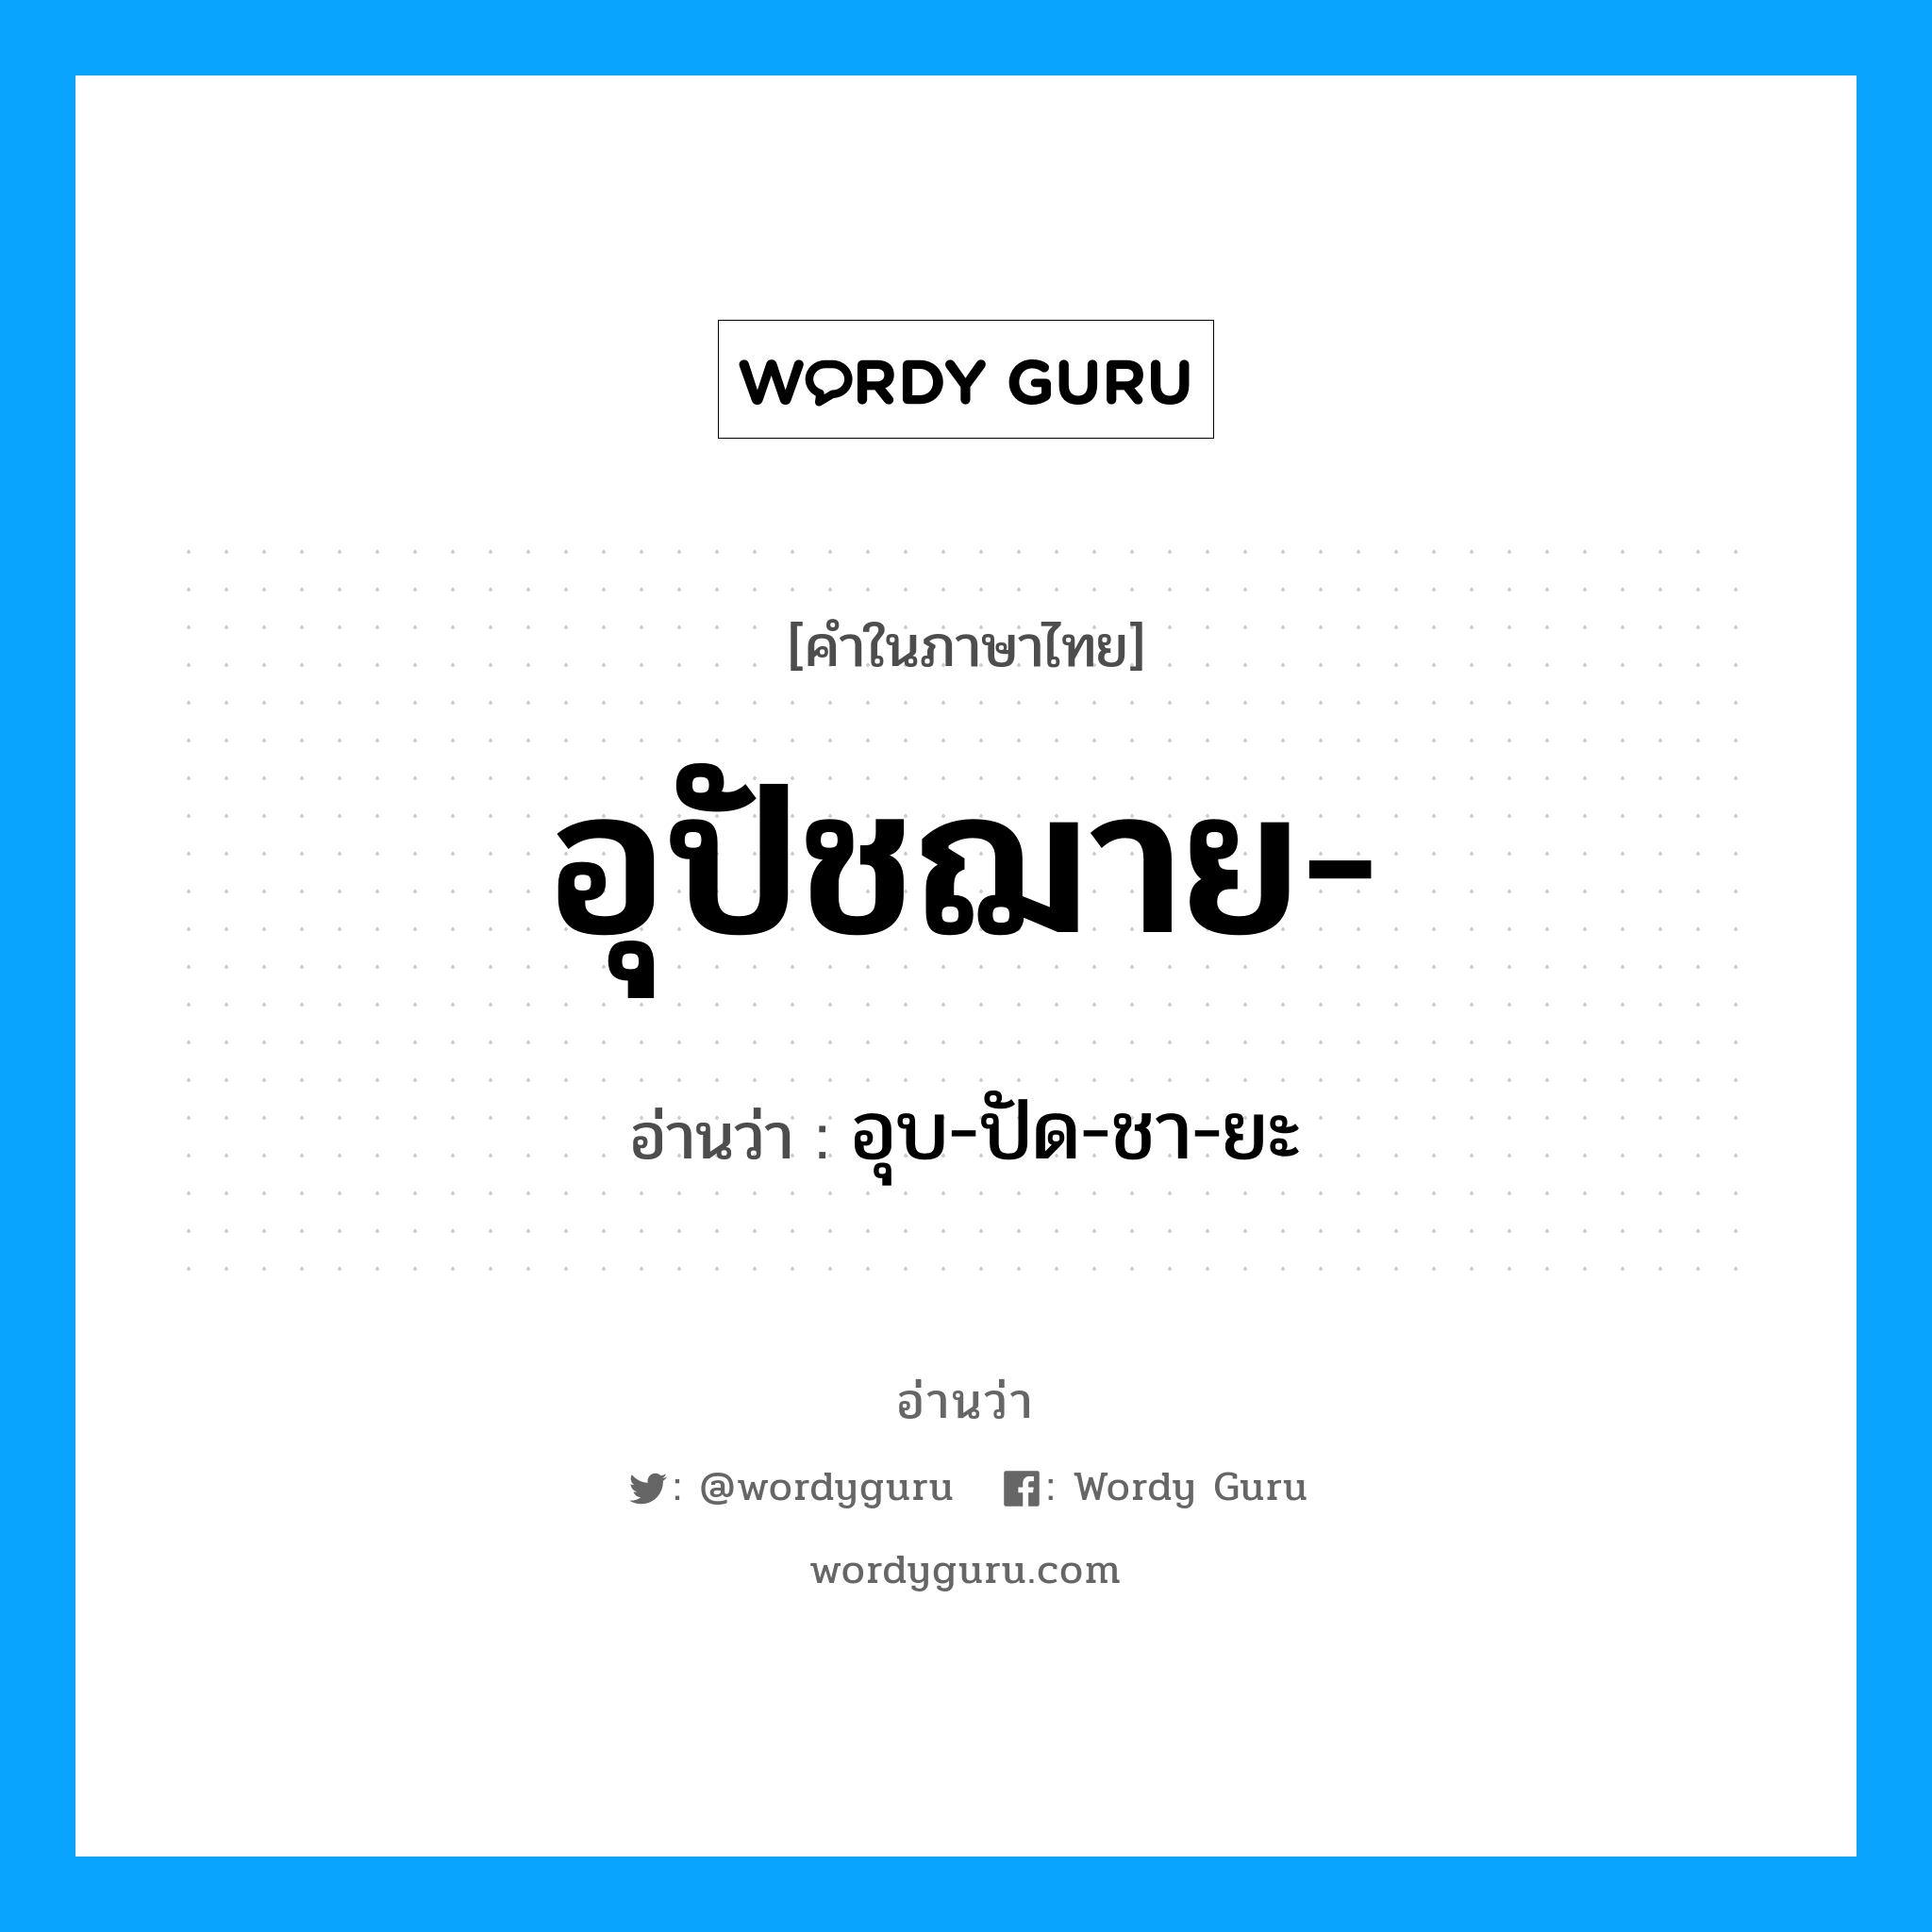 อุบ-ปัด-ชา-ยะ เป็นคำอ่านของคำไหน?, คำในภาษาไทย อุบ-ปัด-ชา-ยะ อ่านว่า อุปัชฌาย-